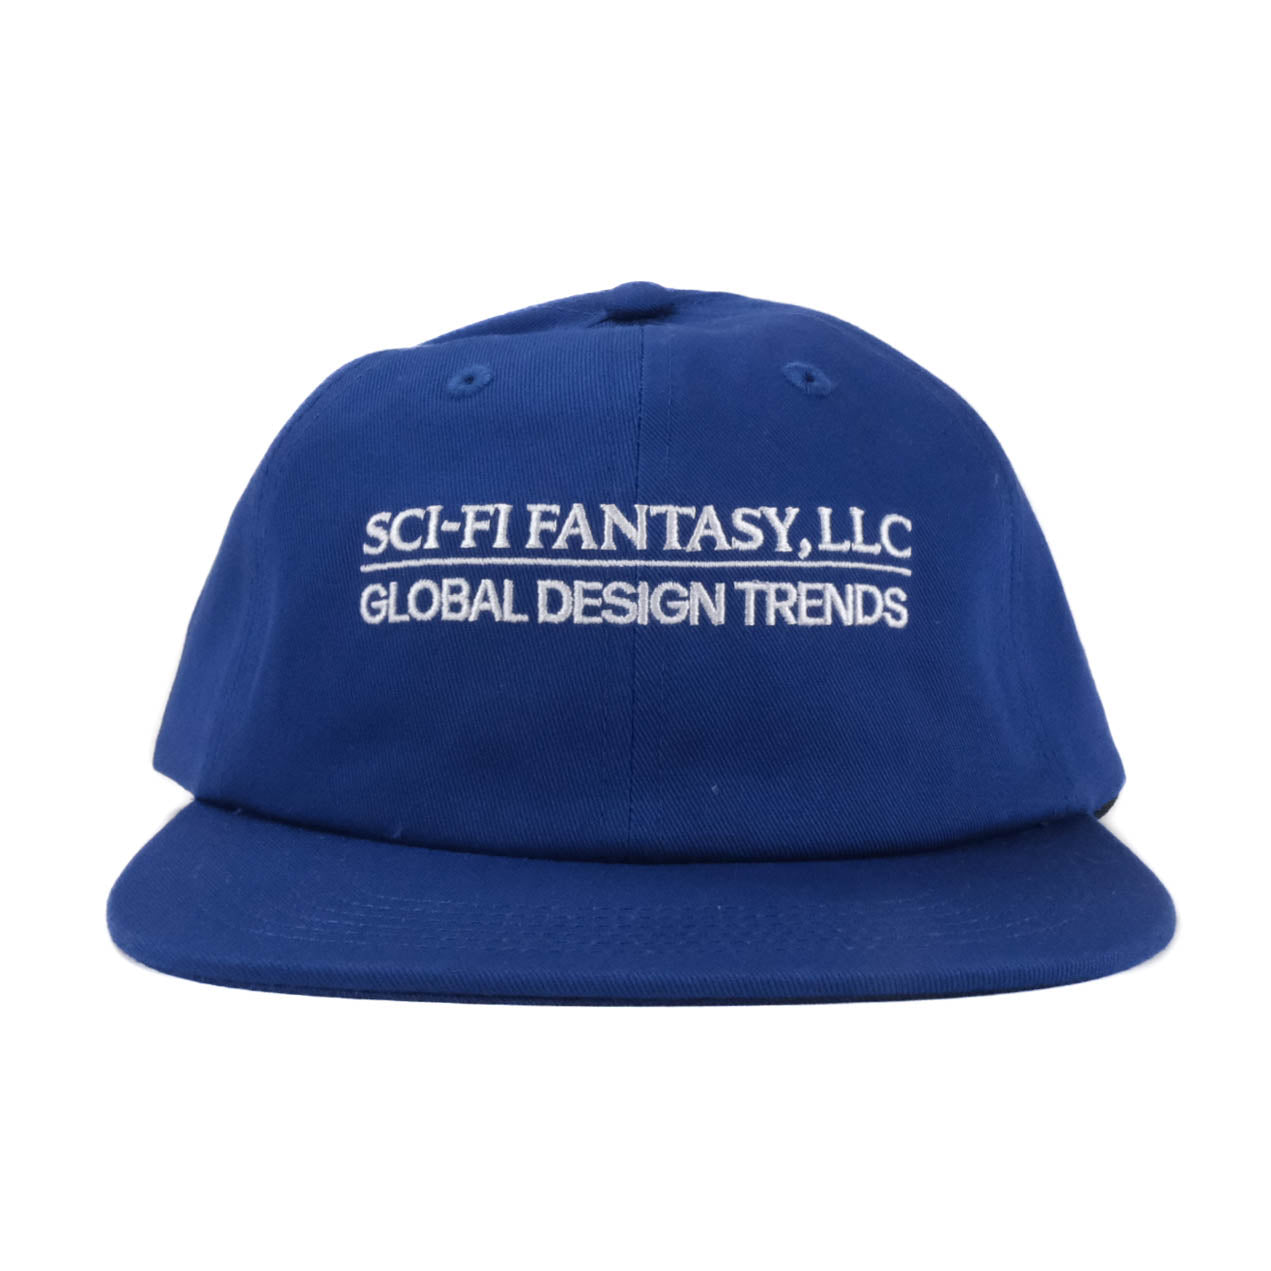 Global Design Trends Hat - Navy